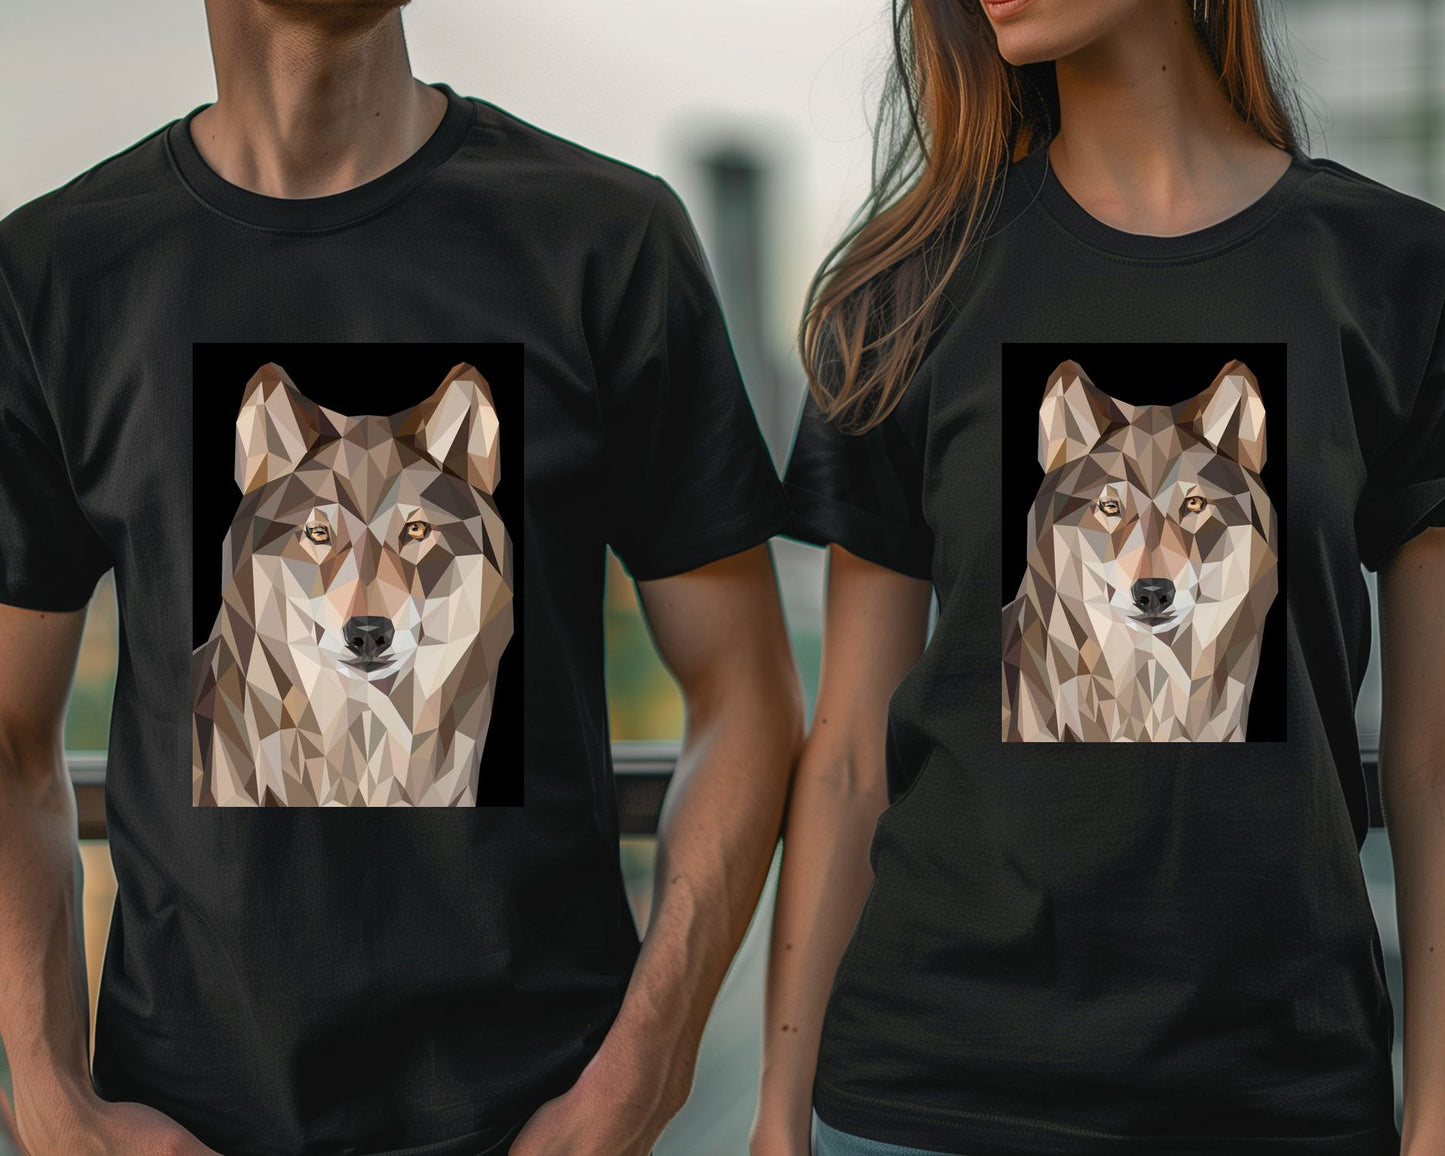 the wolves - @Artnesia